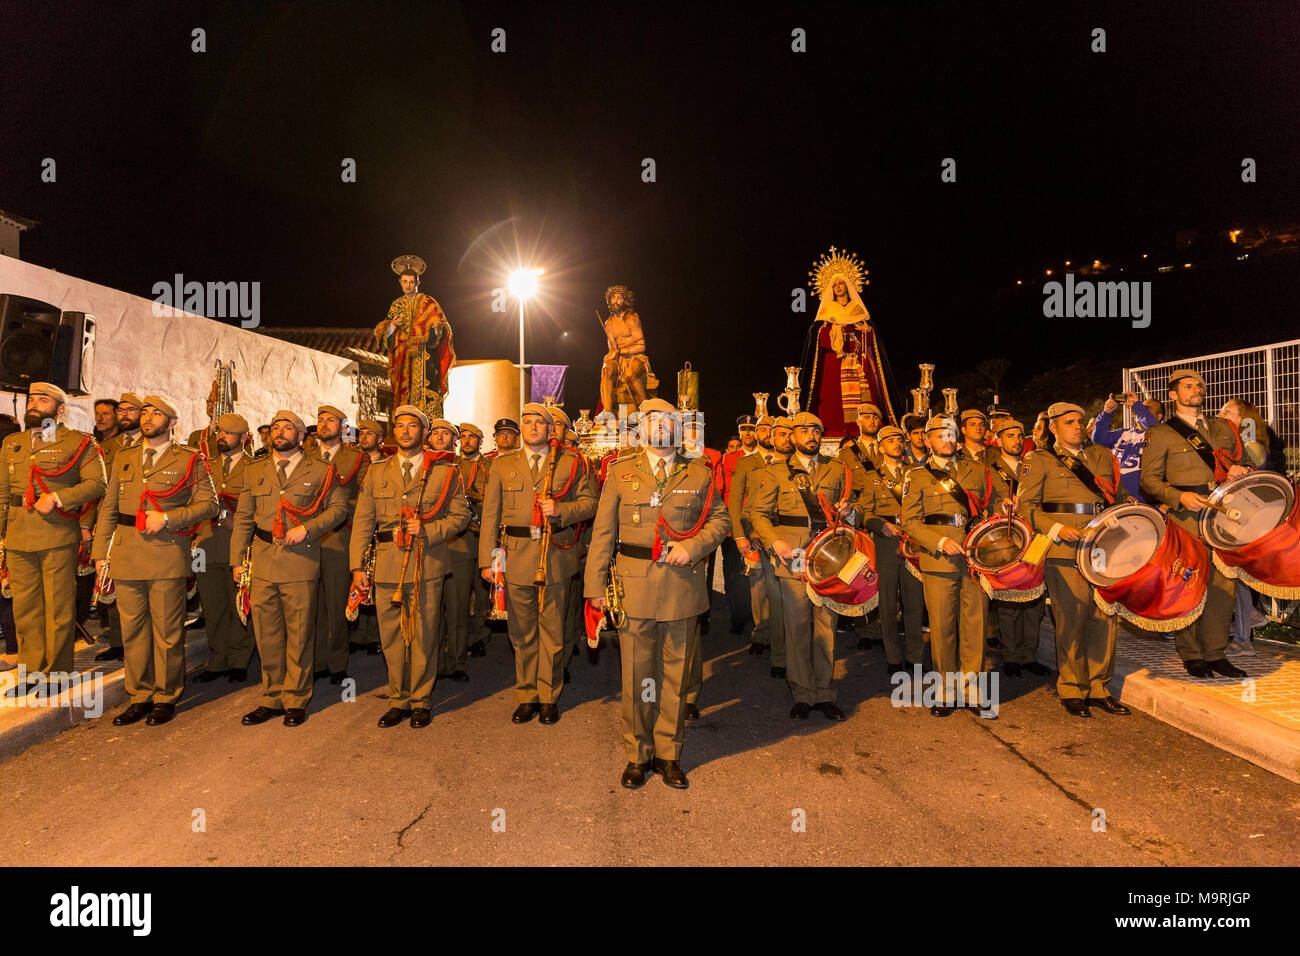 Mitglieder der örtlichen Feuerwehr, in Uniform, die Teilnahme an einem religiösen Prozession am Montag der Karwoche, mit lebensgroßen Statuen von Jesus Chri Stockfoto